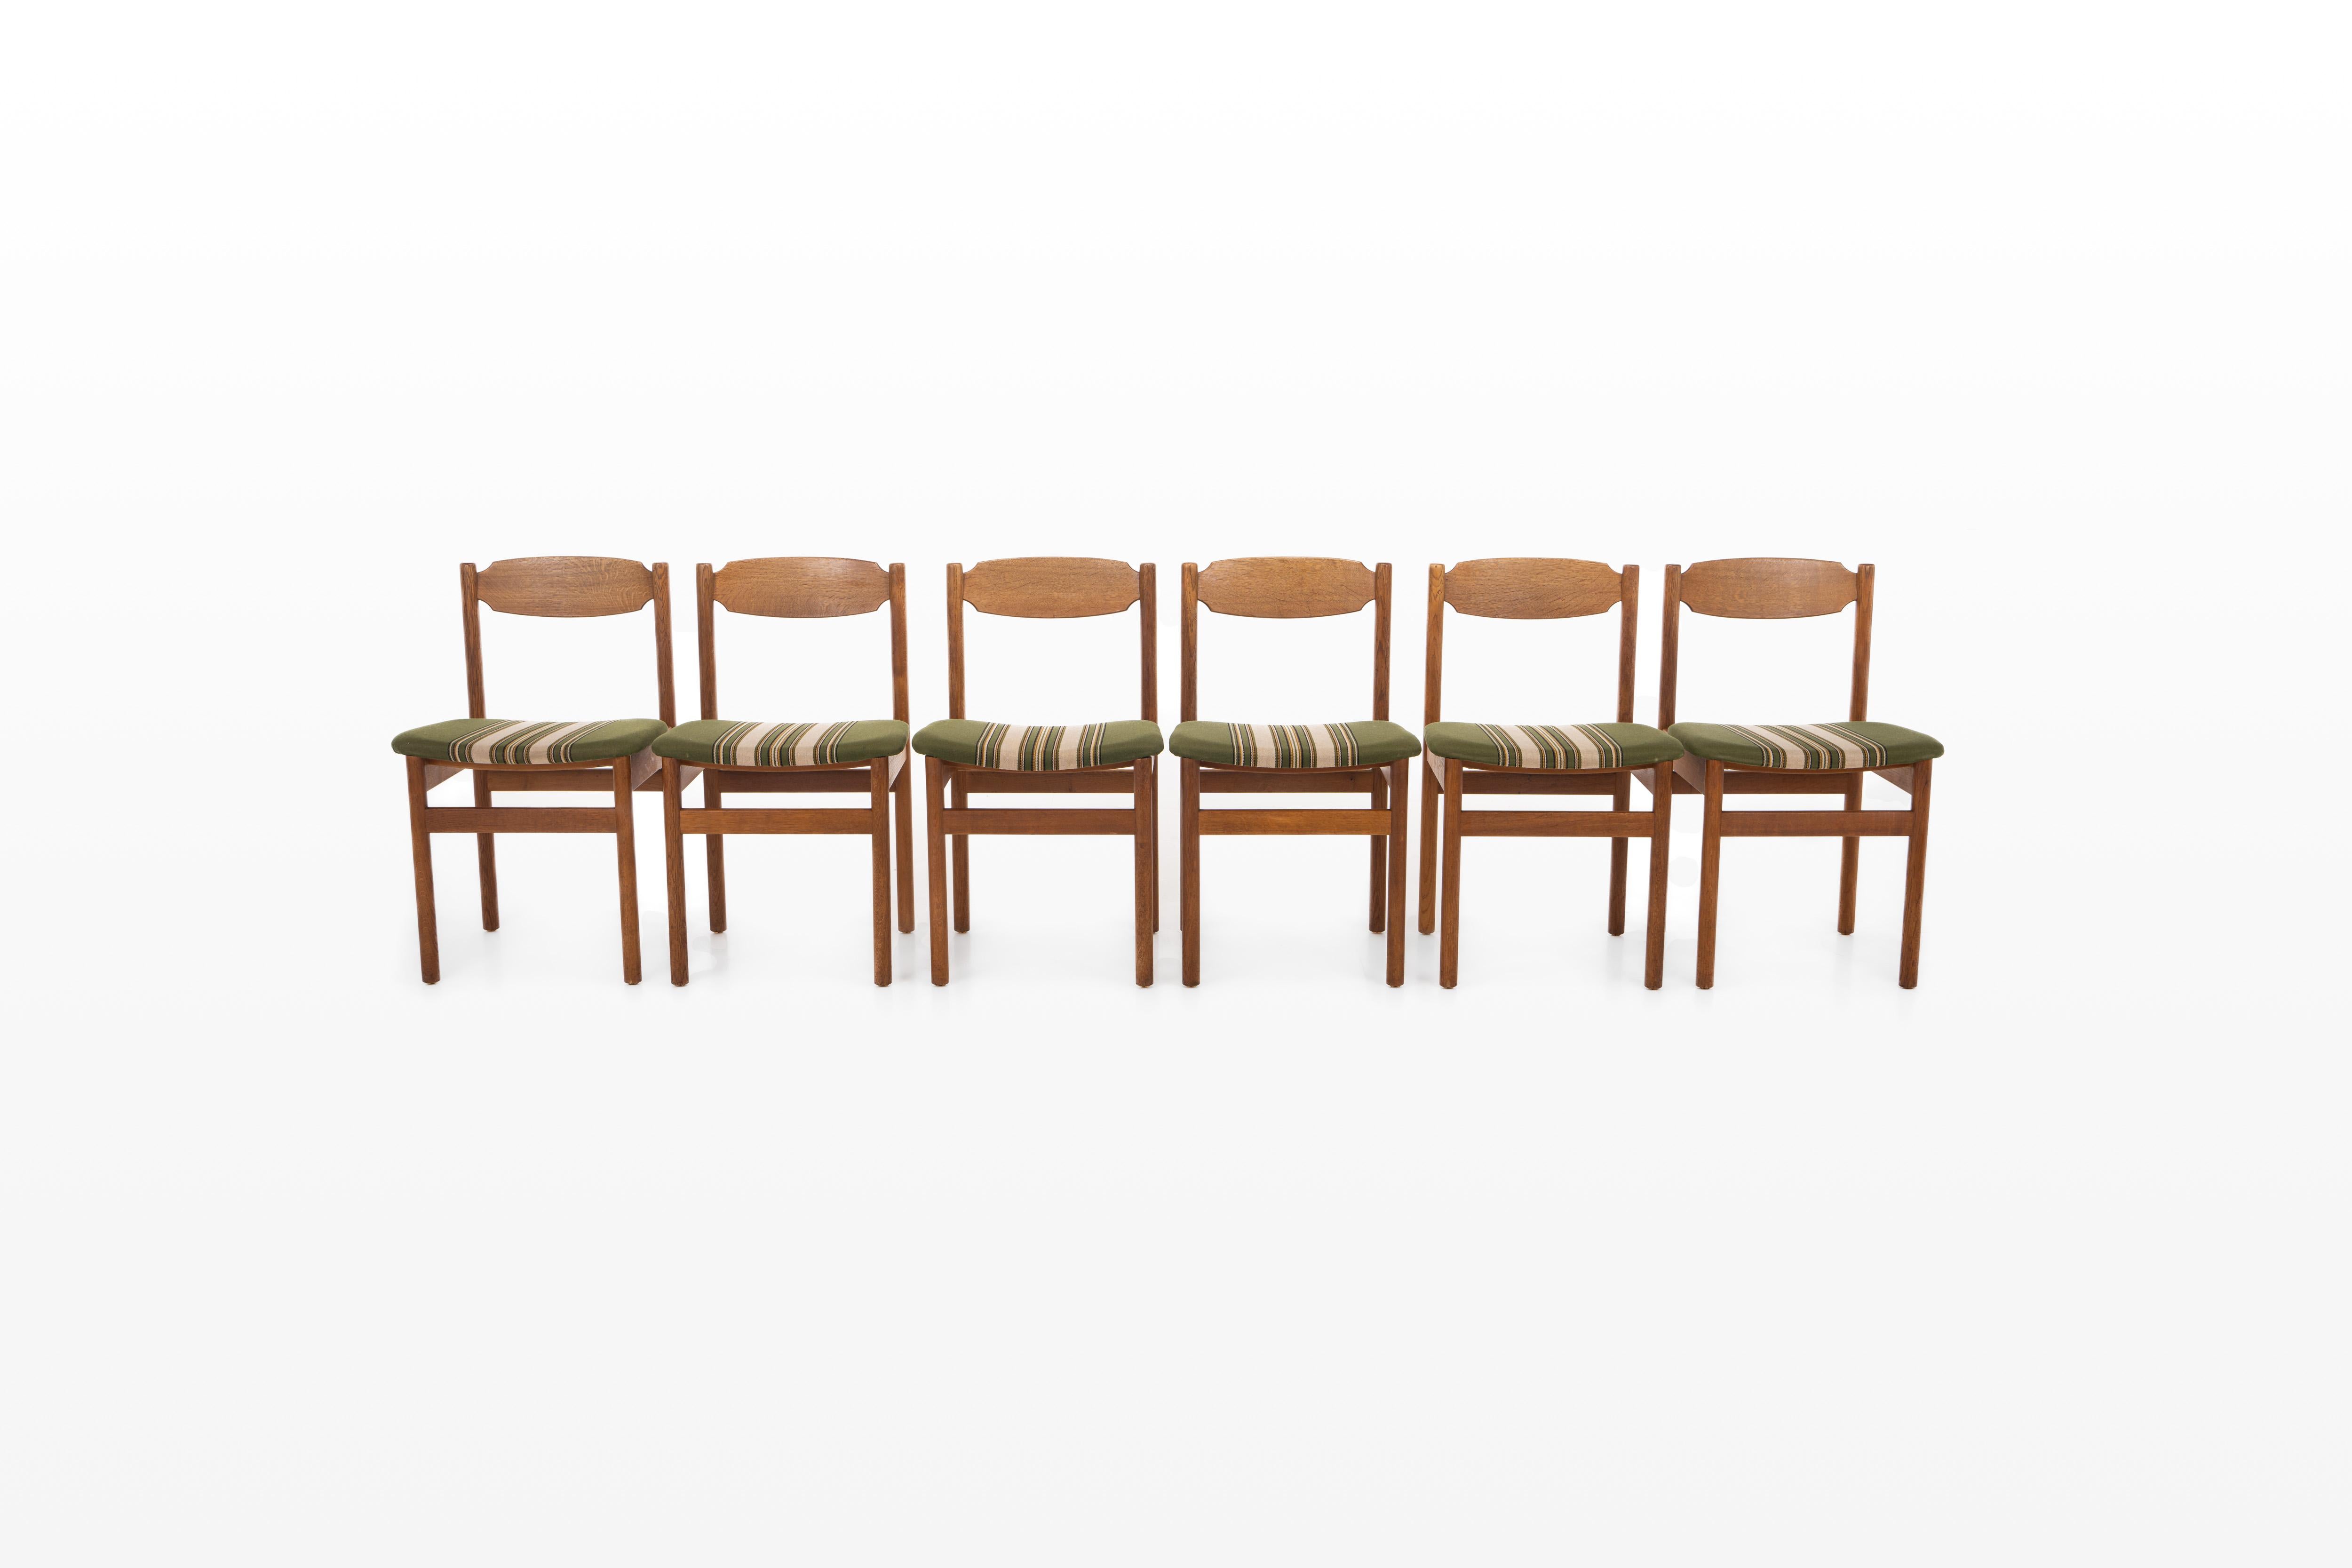 Ensemble de six chaises de salle à manger danoises vintage en chêne avec le tissu rayé vert et beige d'origine.
